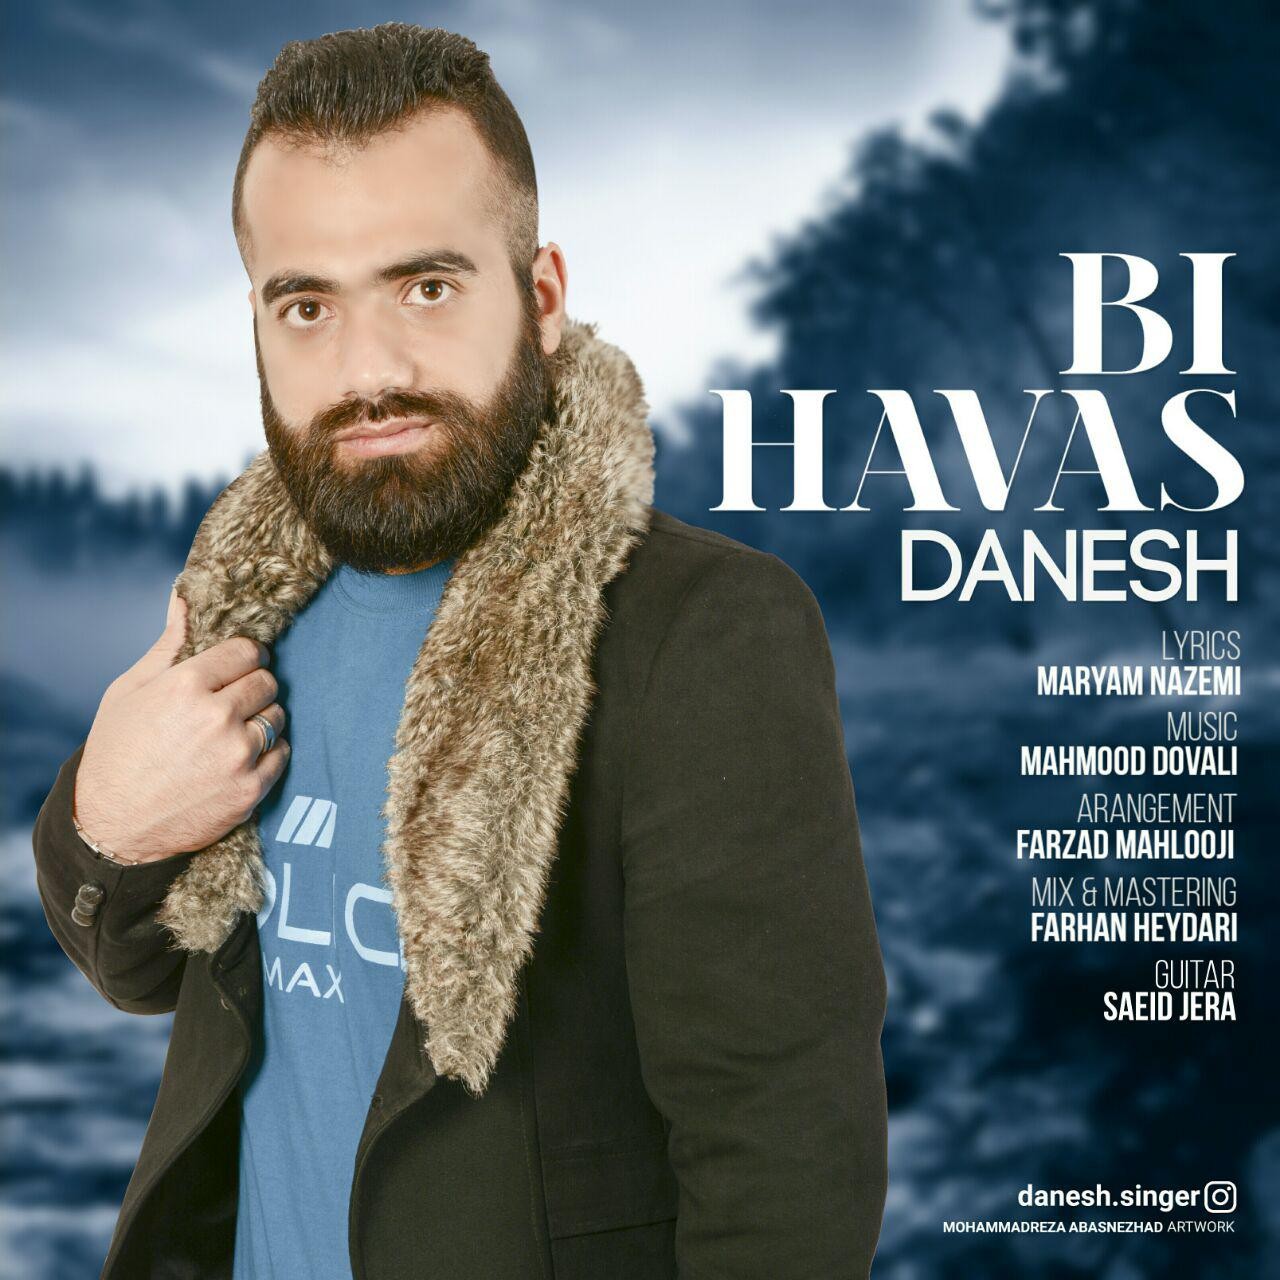  دانلود آهنگ جدید دانش - بی هواس | Download New Music By Danesh - Bi Havas